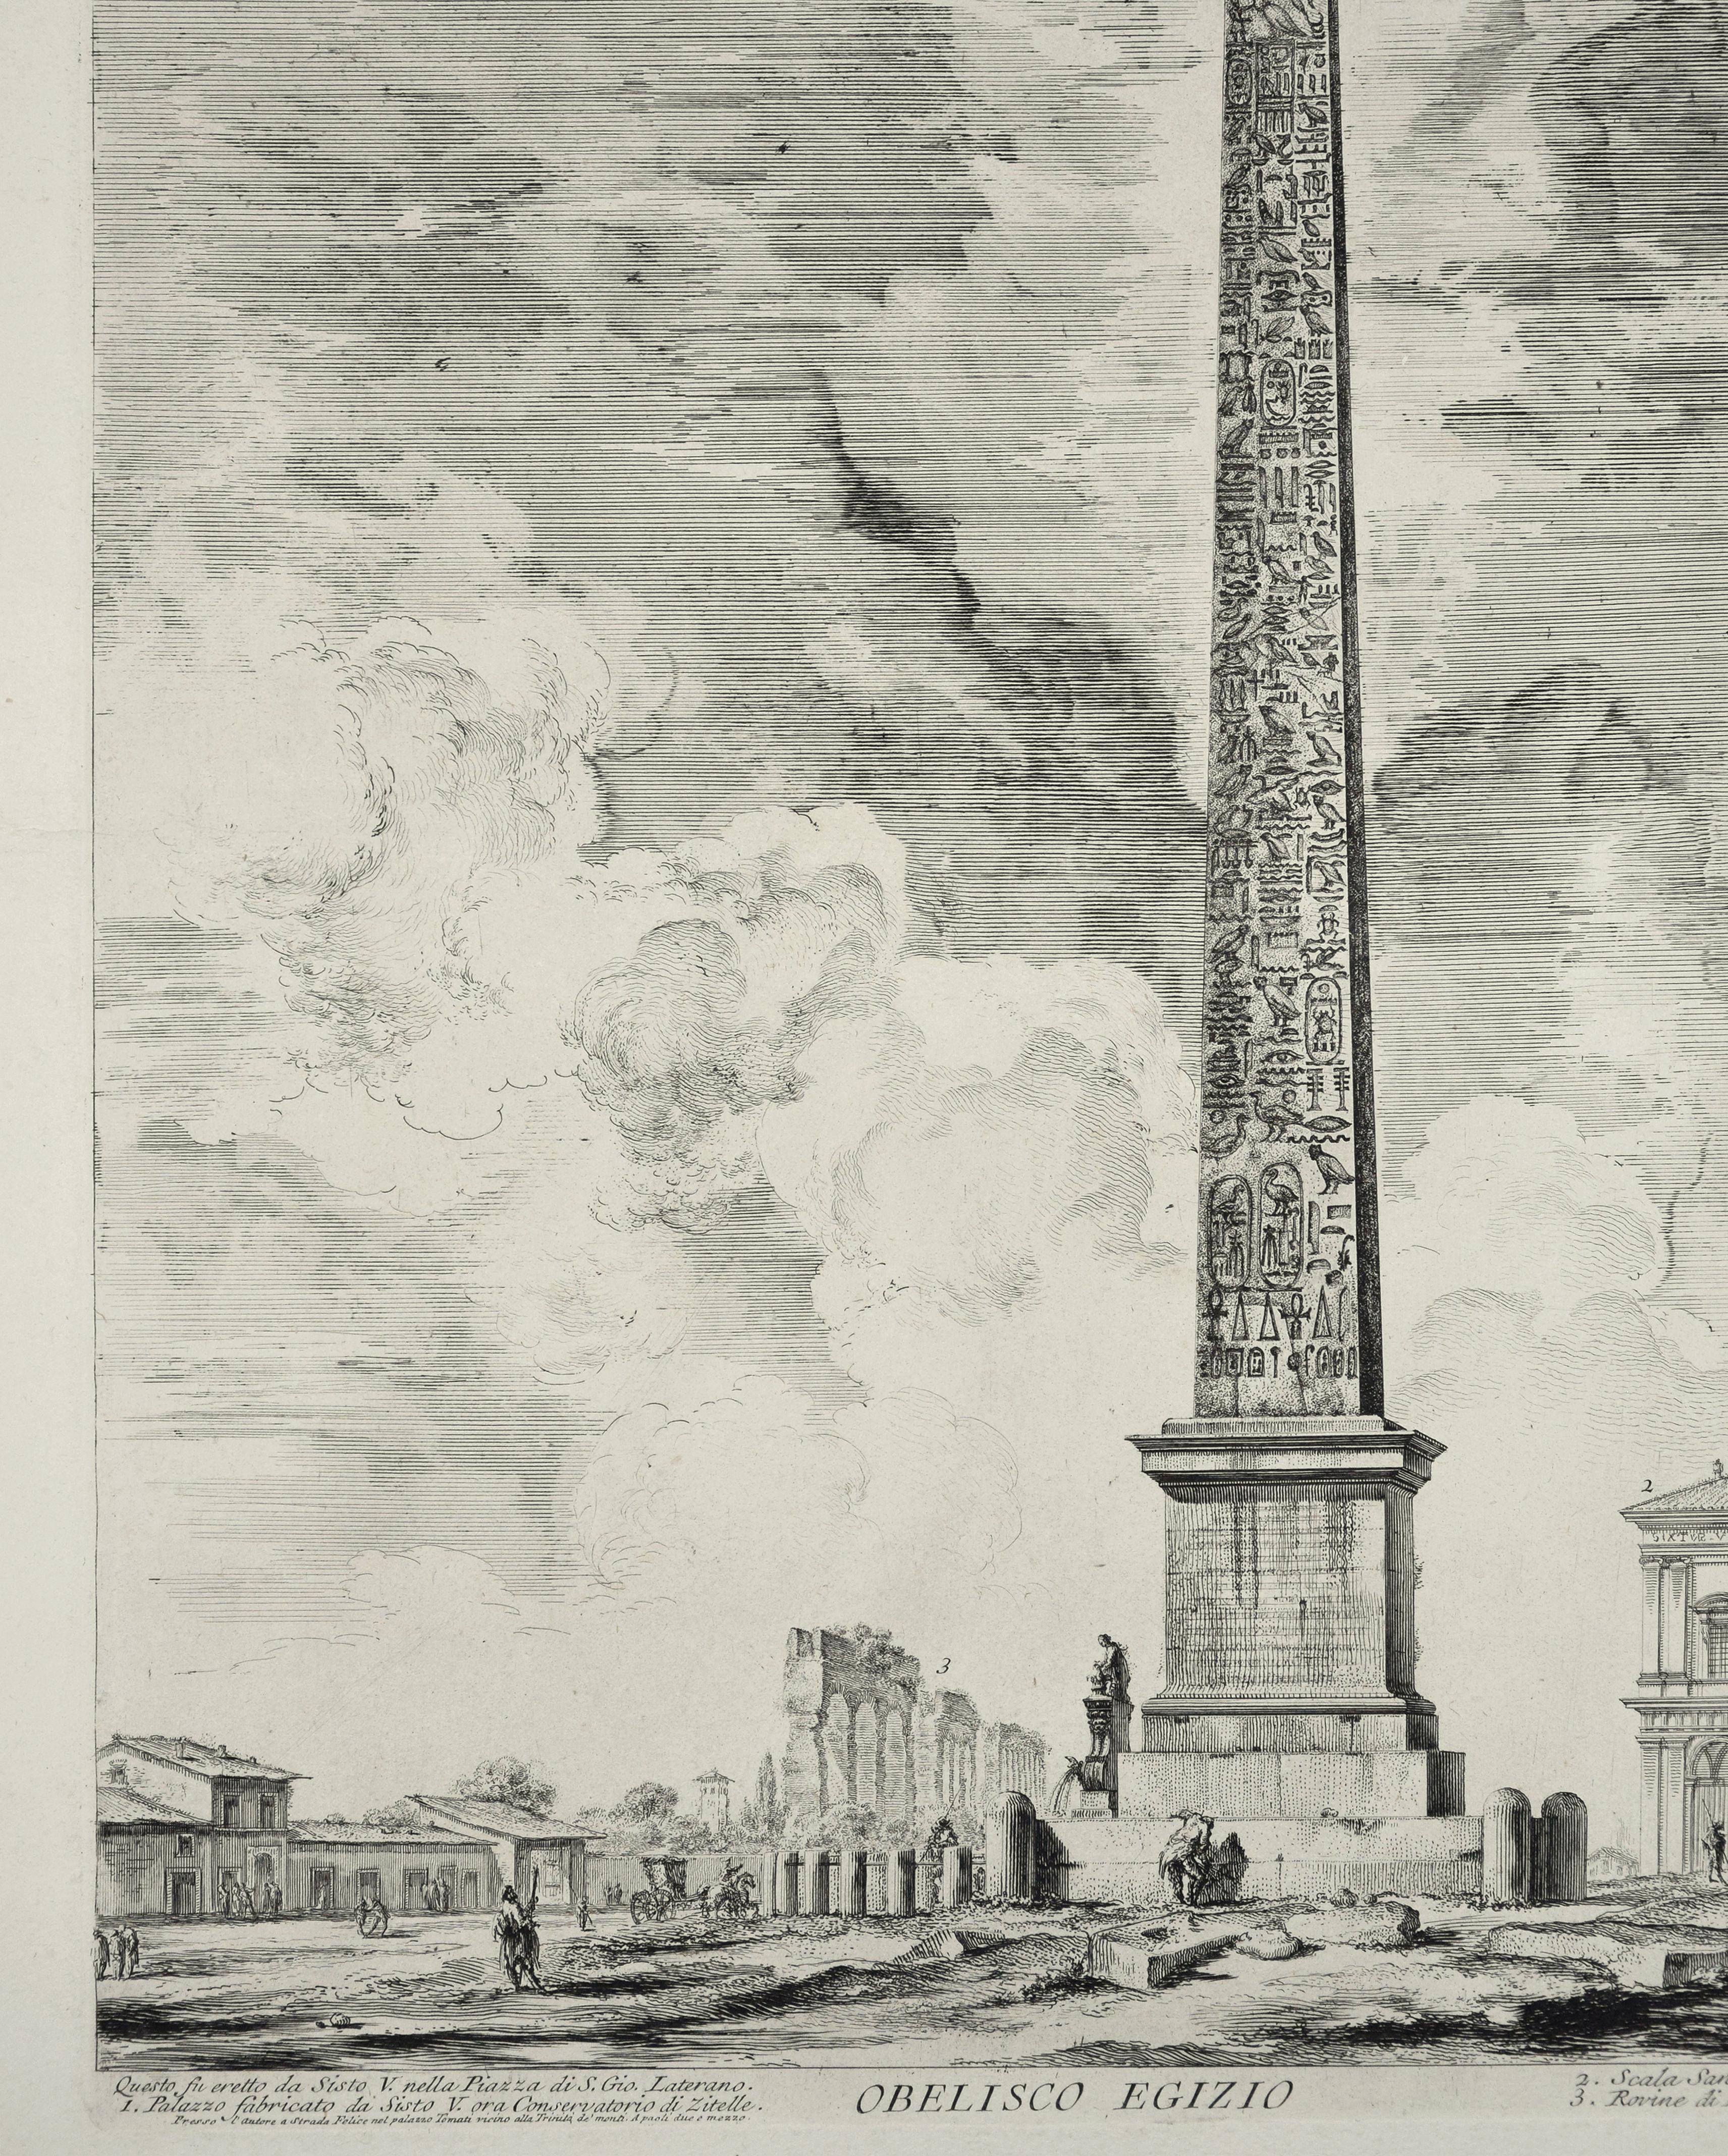 Obelisco Egizio (Egyptian Obelisk) - Etching by G. B. Piranesi - Print by Giovanni Battista Piranesi